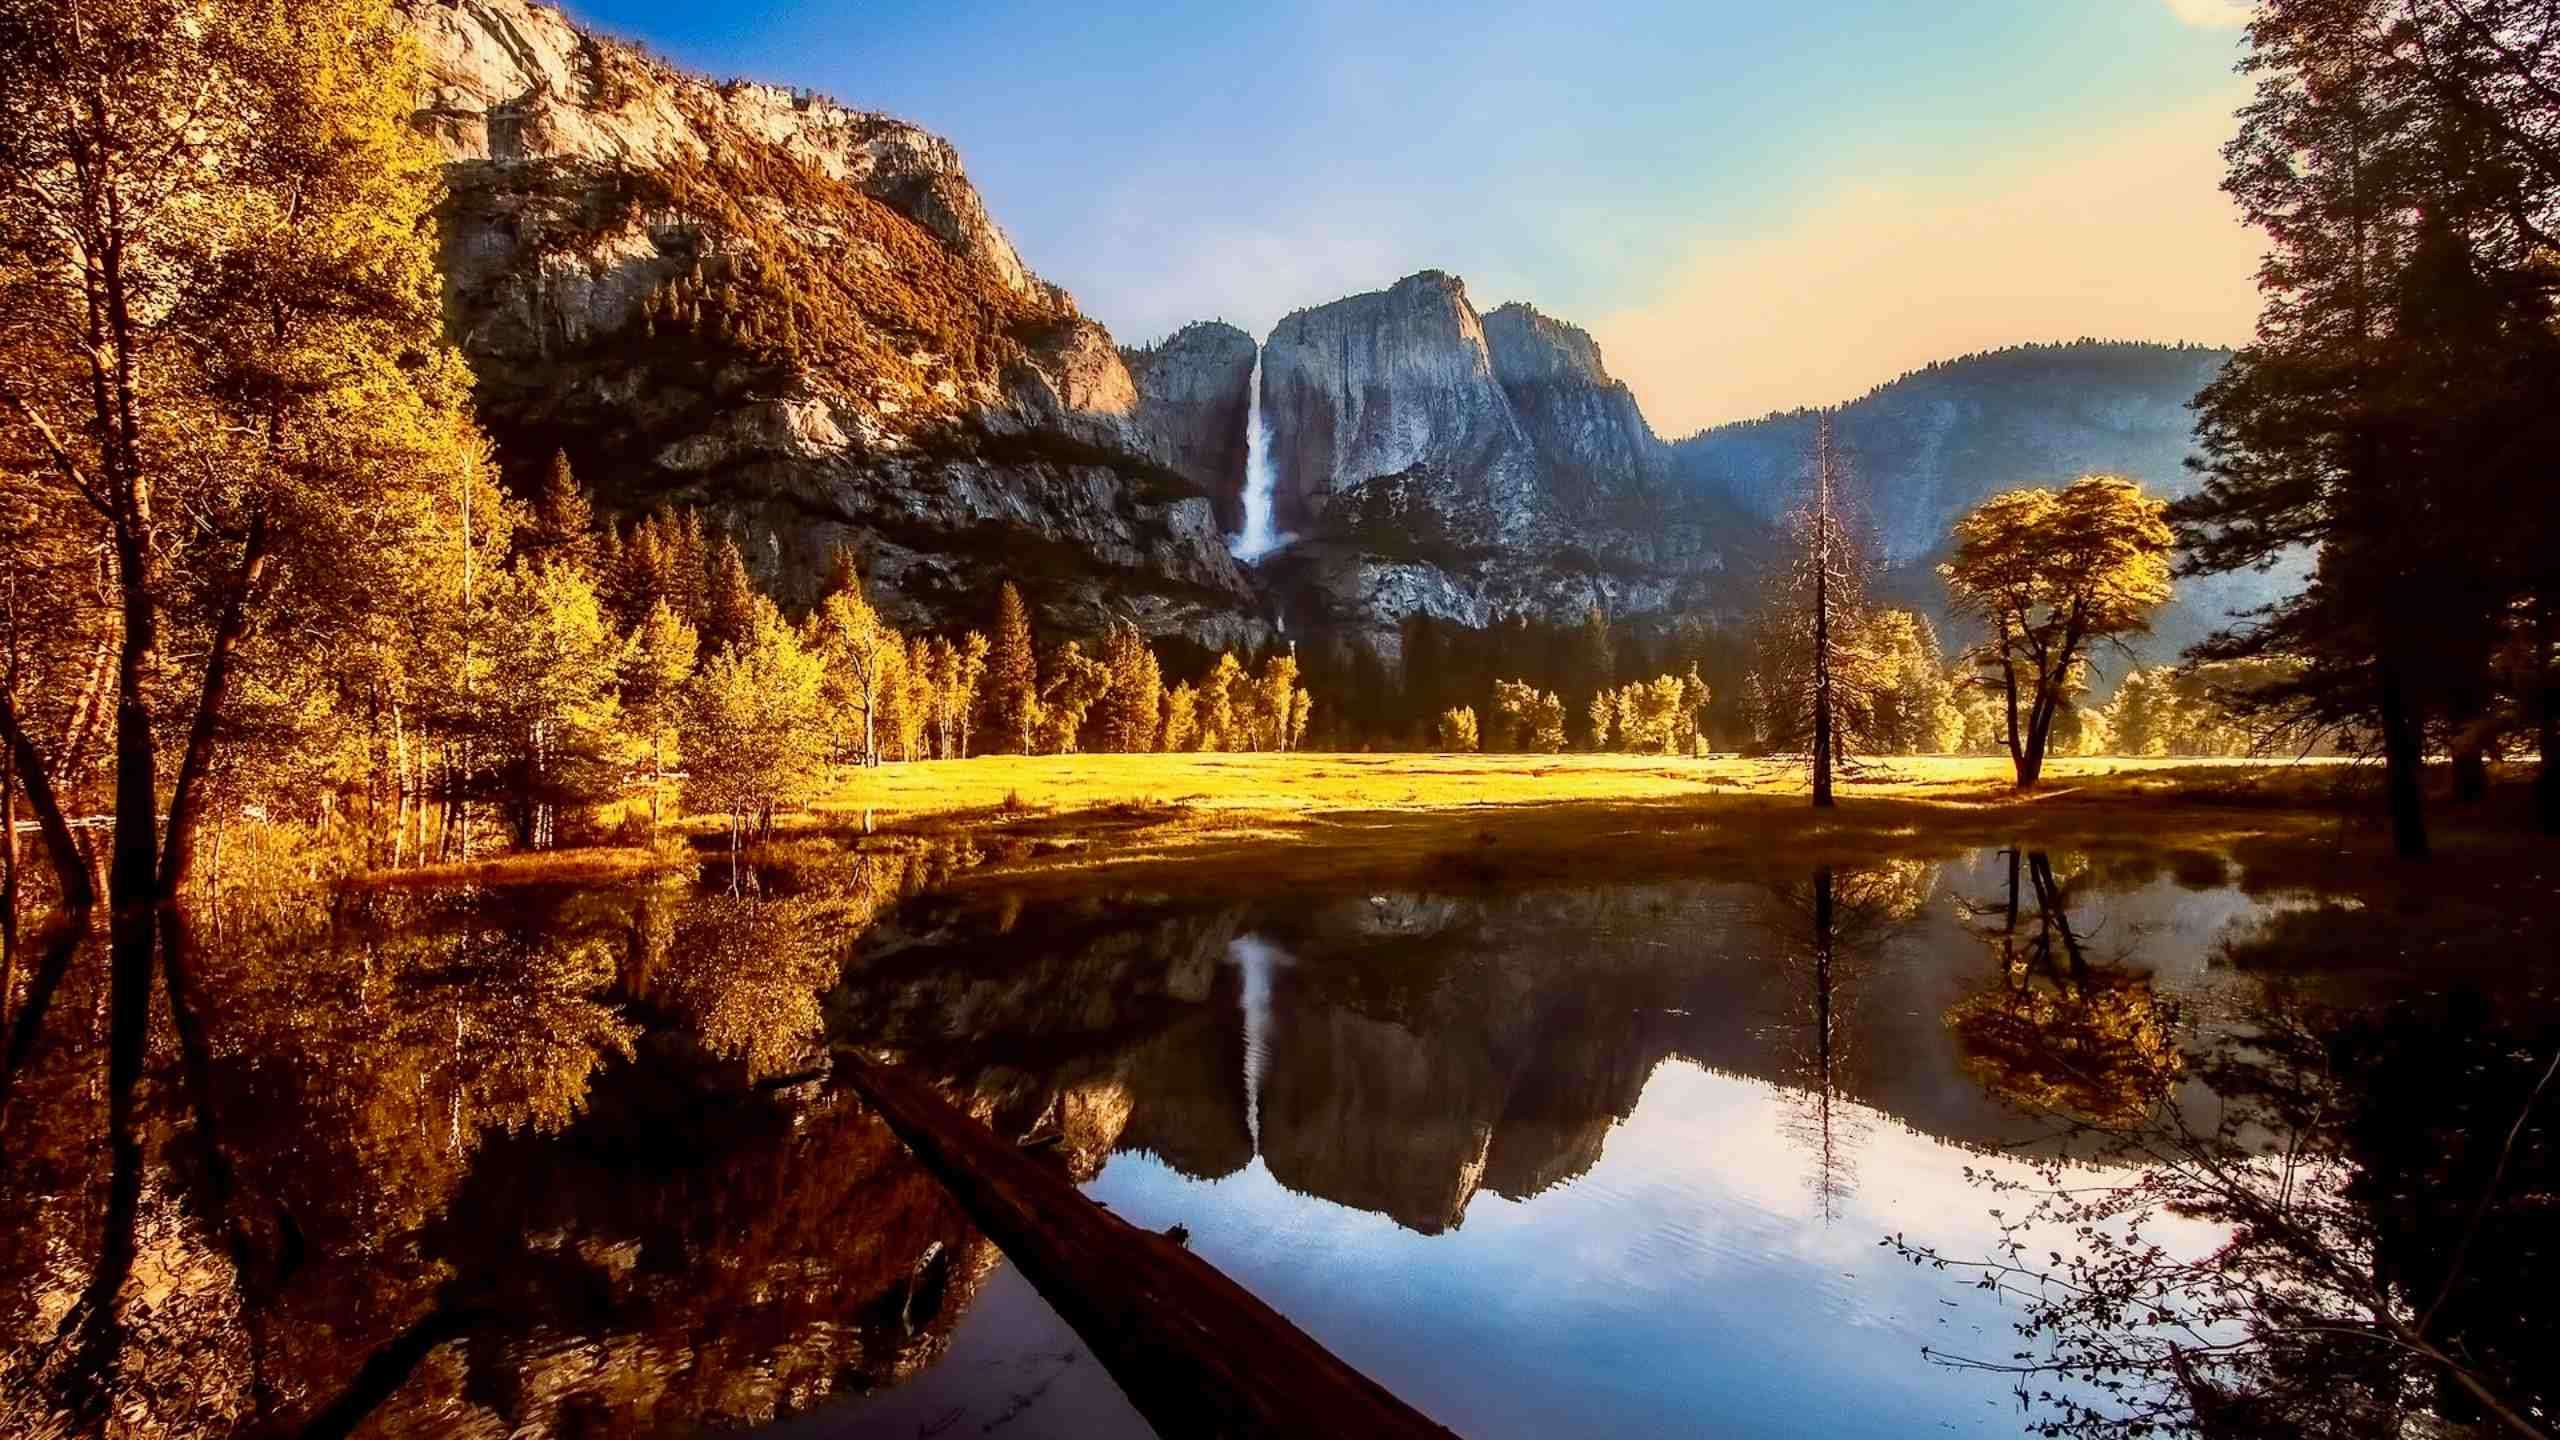 Best of Yosemite Walk 6D5N (Half Dome, El Capitan & Yosemite Falls) Fully Guided 